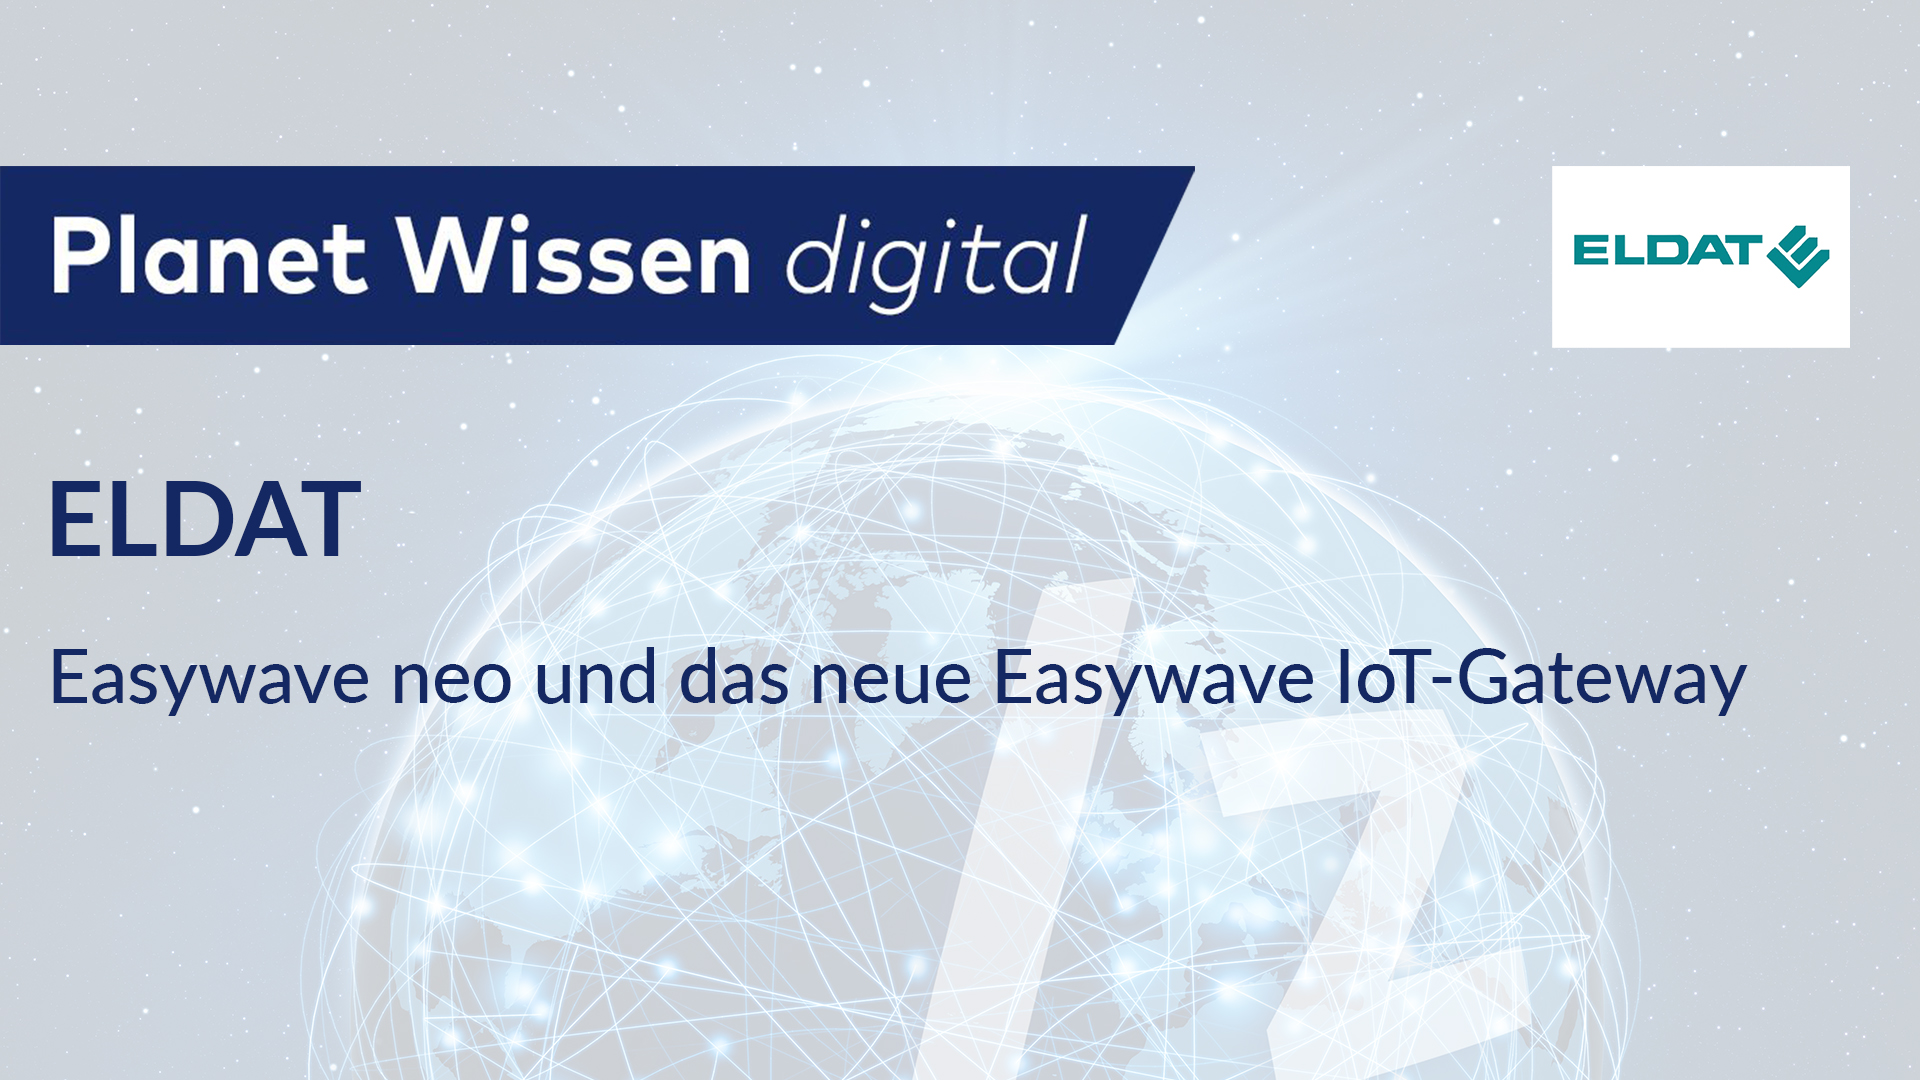 ELDAT – Easywave neo und das neue Easywave IoT-Gateway